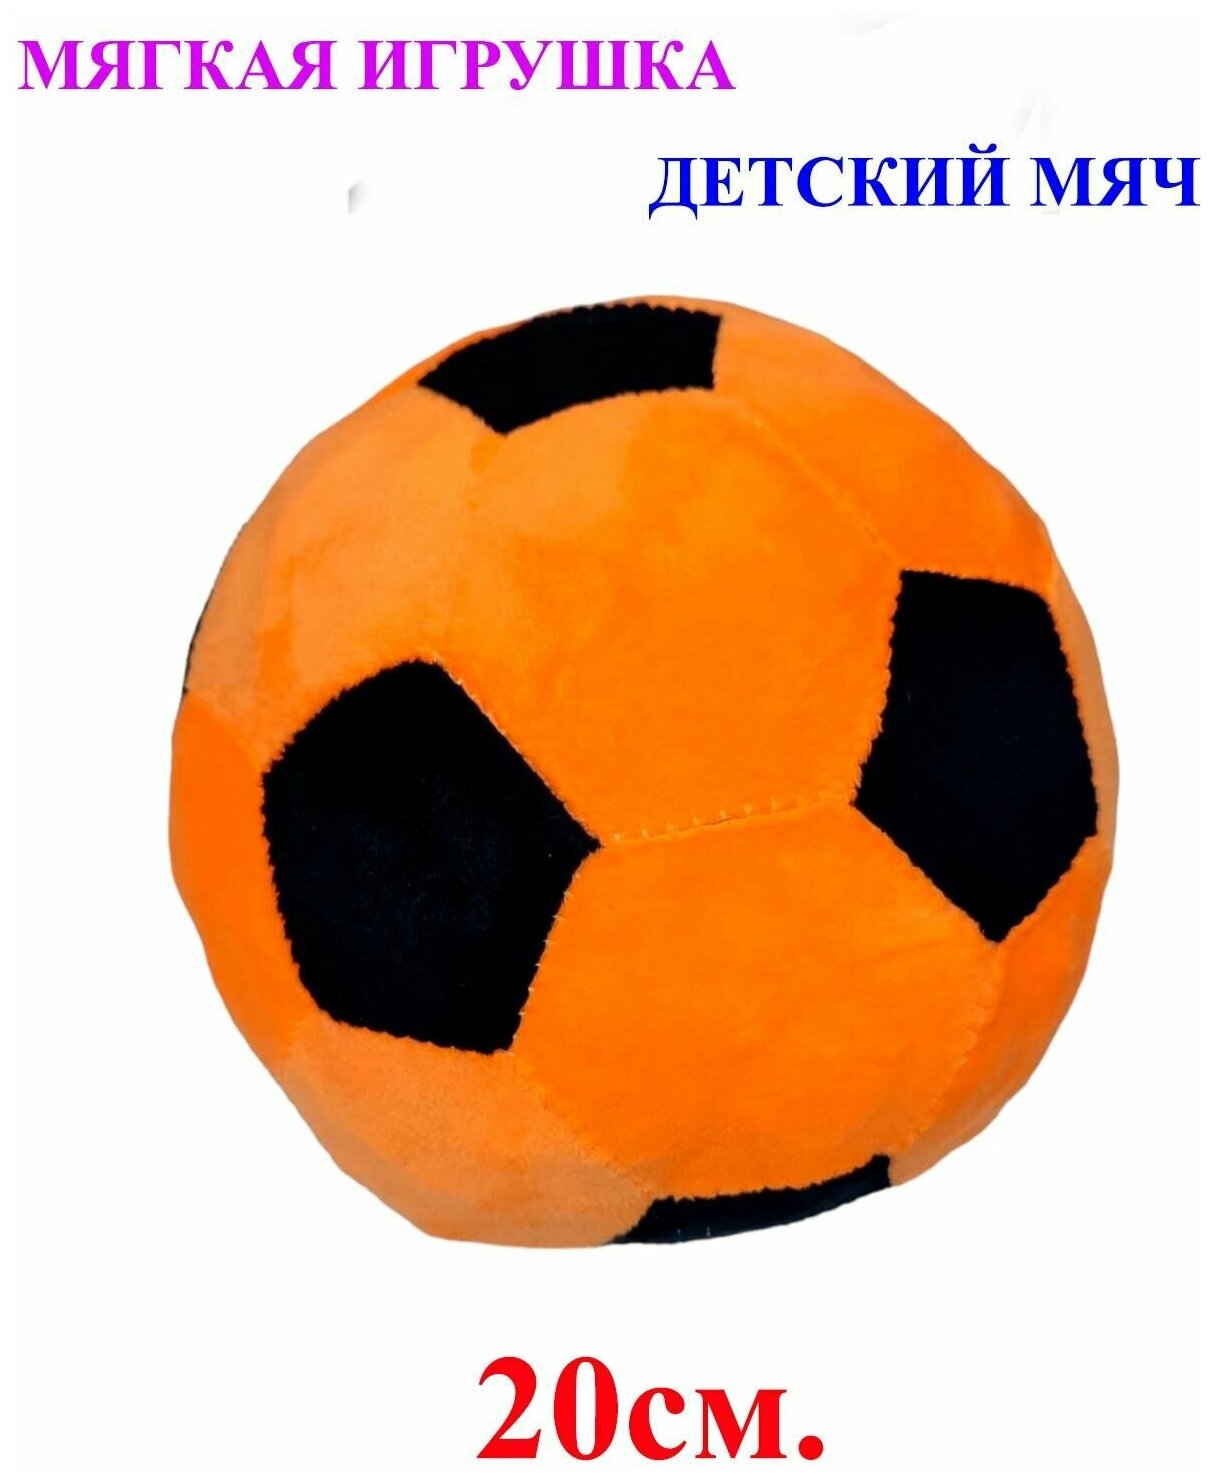 Мягкая игрушка детский футбольный мяч оранжевый. 20 см. Плюшевый мягкий мячик для детей.